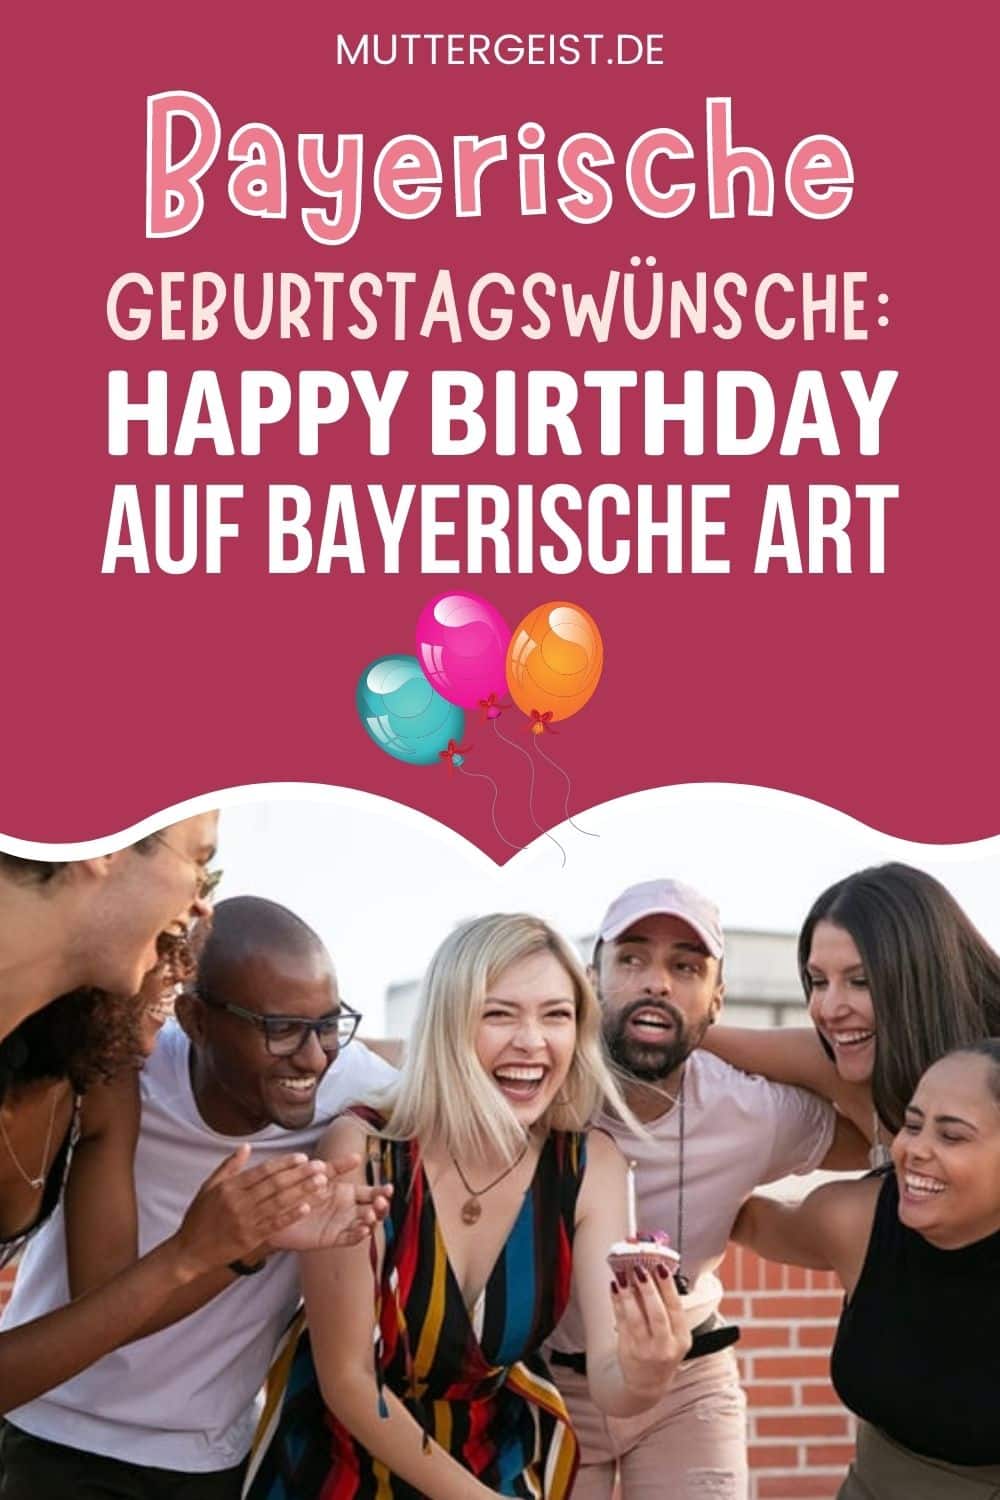 Bayerische Geburtstagswünsche – Happy Birthday Auf Bayerische Art Pinterest